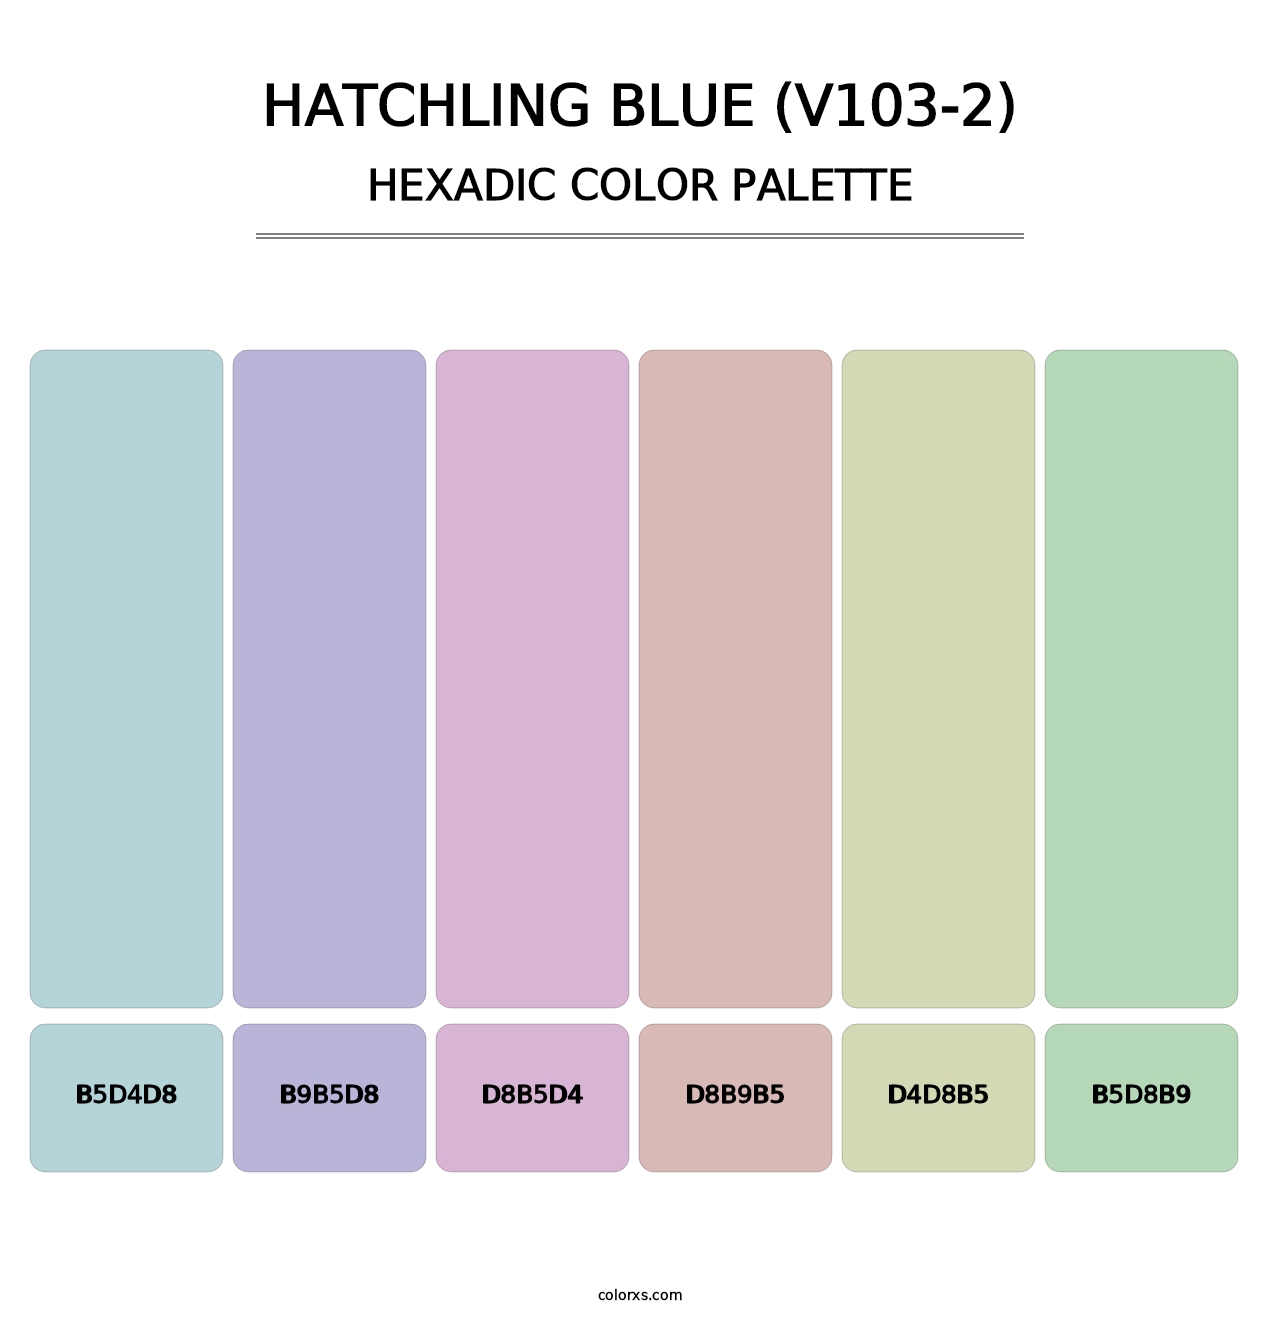 Hatchling Blue (V103-2) - Hexadic Color Palette